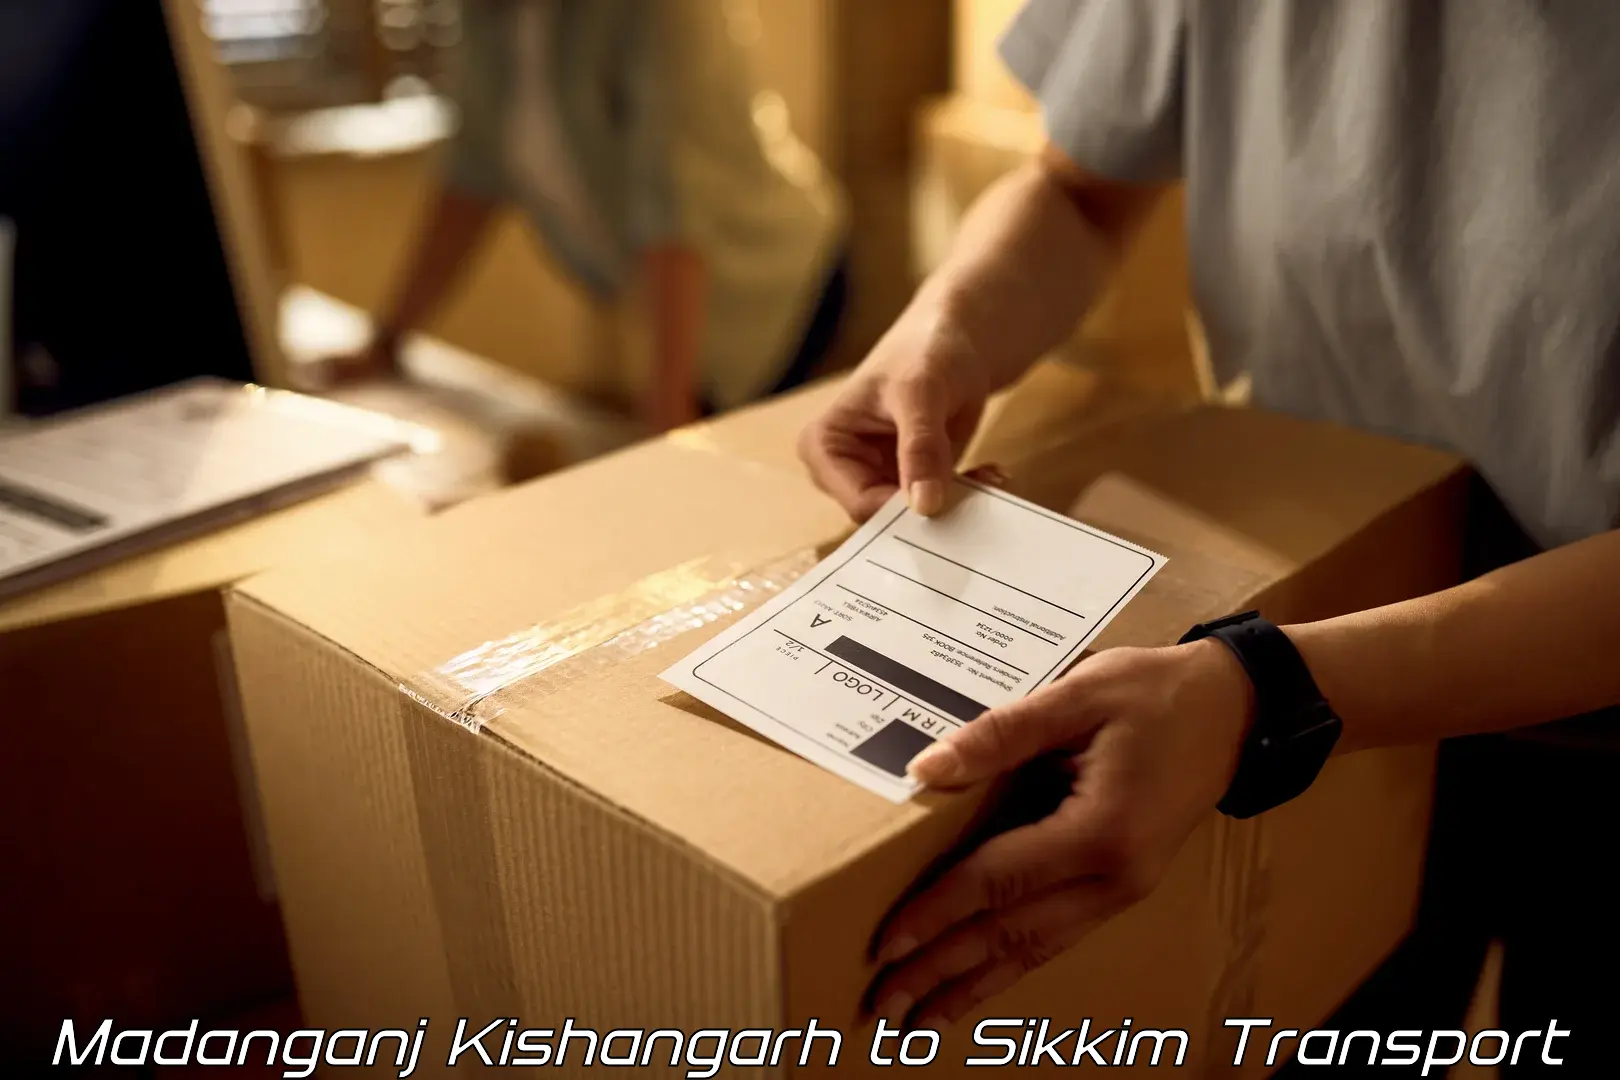 Container transport service Madanganj Kishangarh to North Sikkim